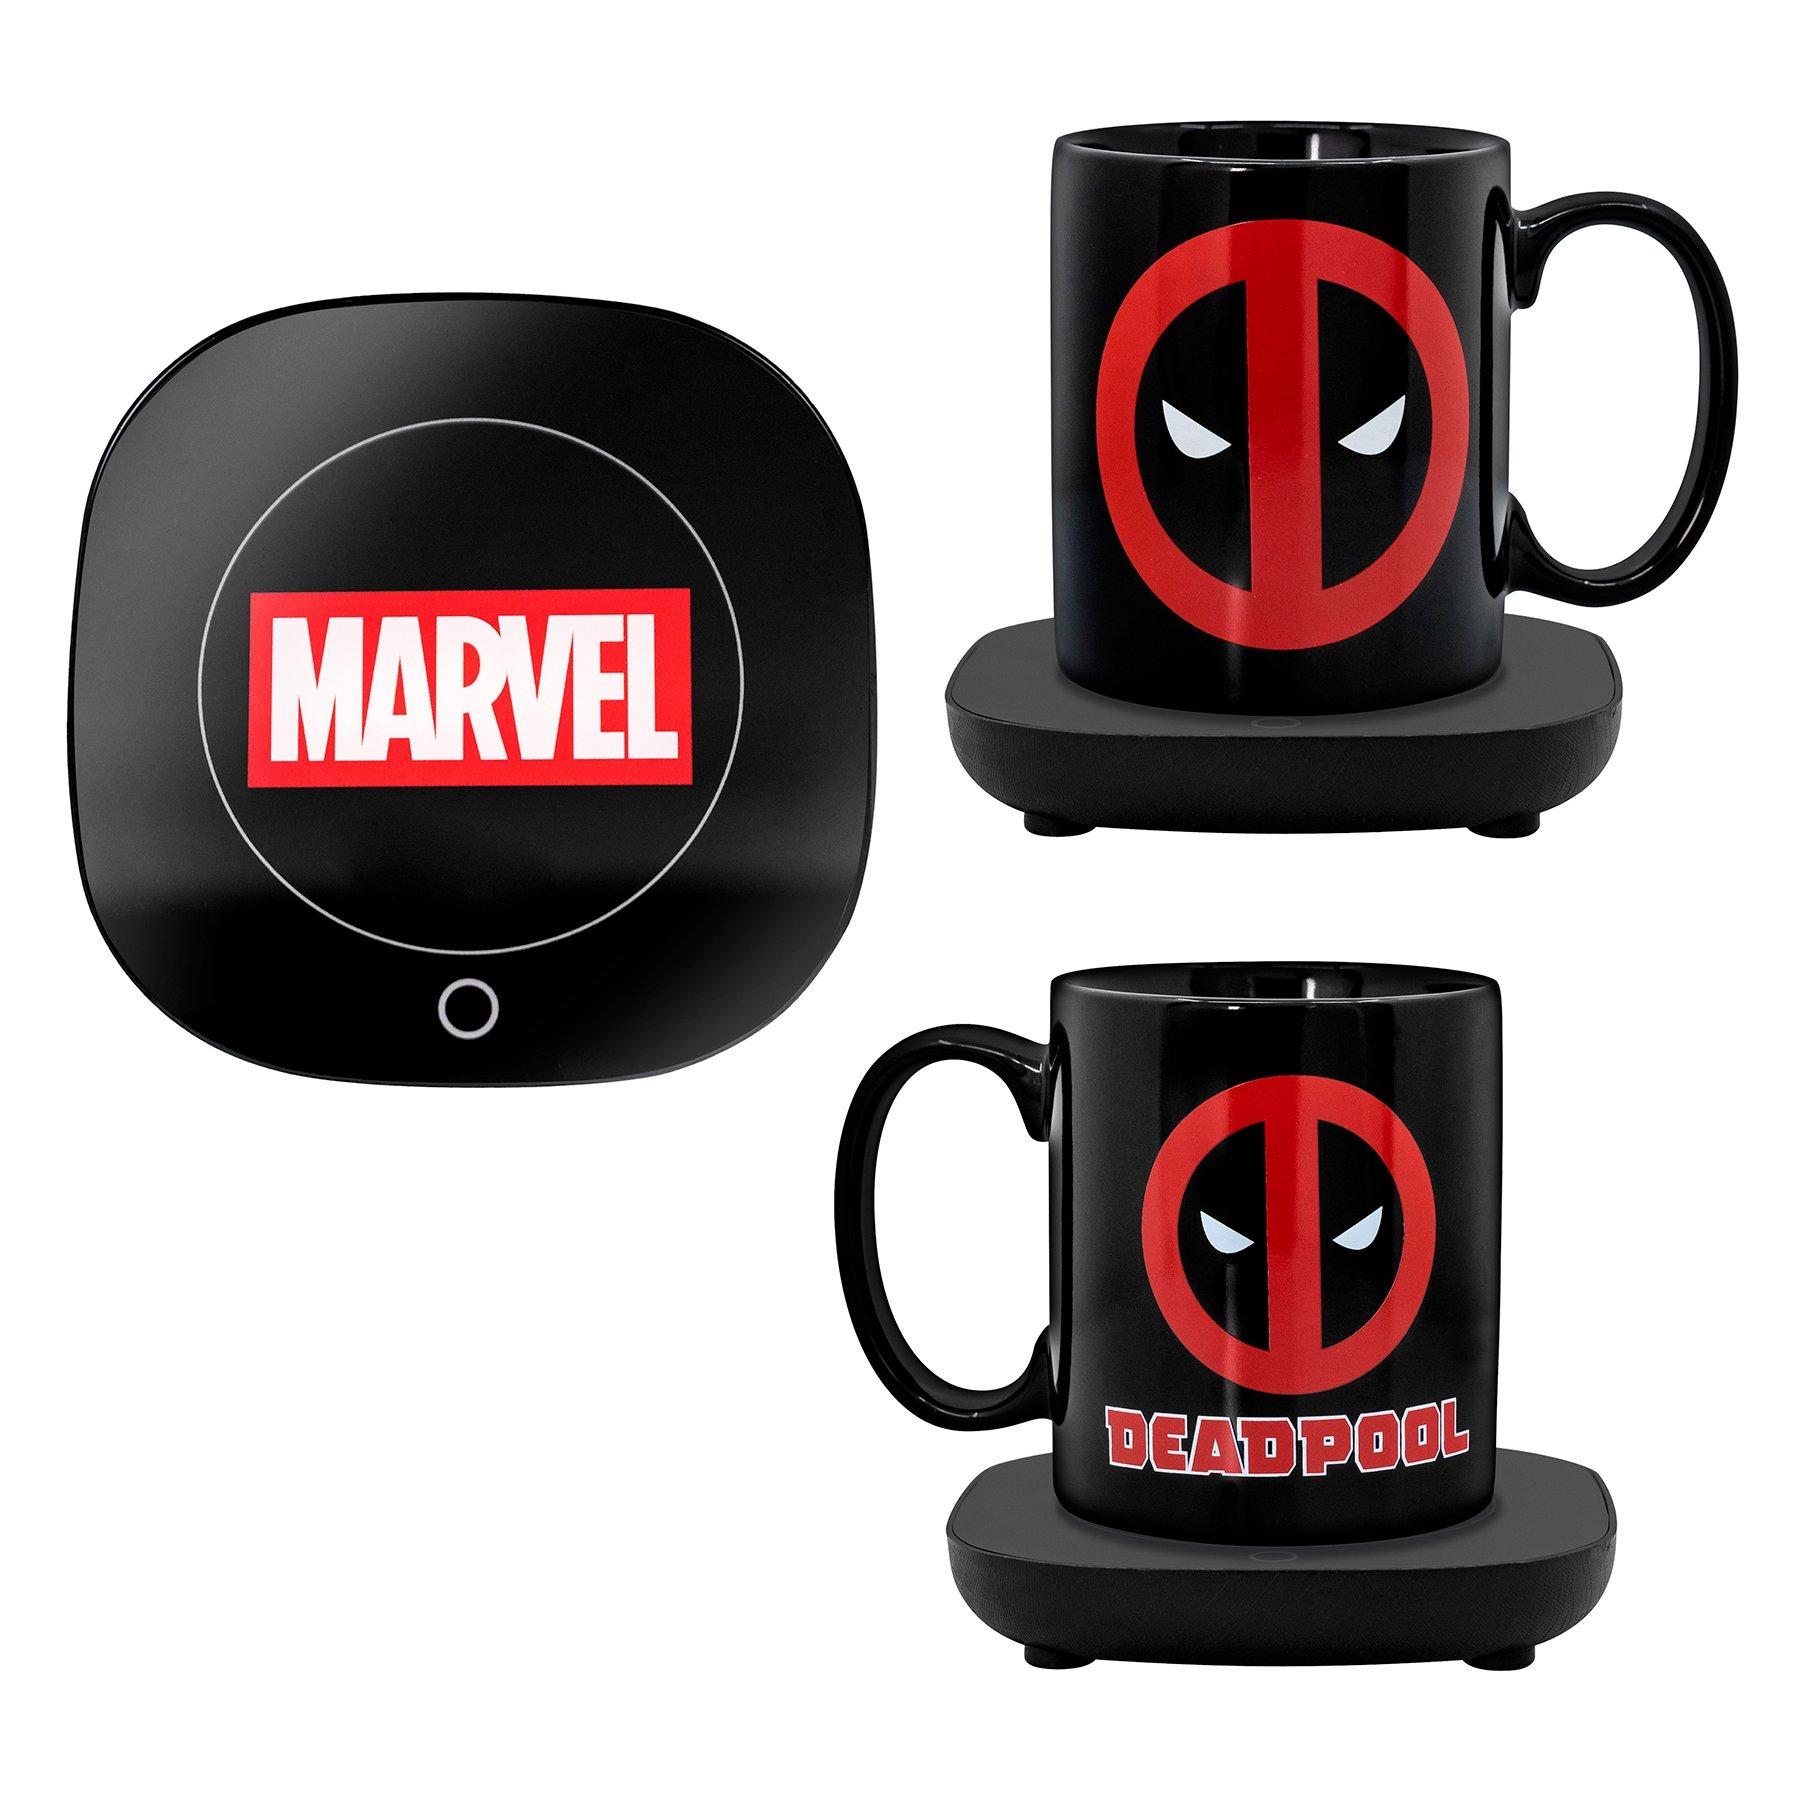 https://media.gamestop.com/i/gamestop/20005592/Marvels-Deadpool-Mug-Warmer-with-Mug